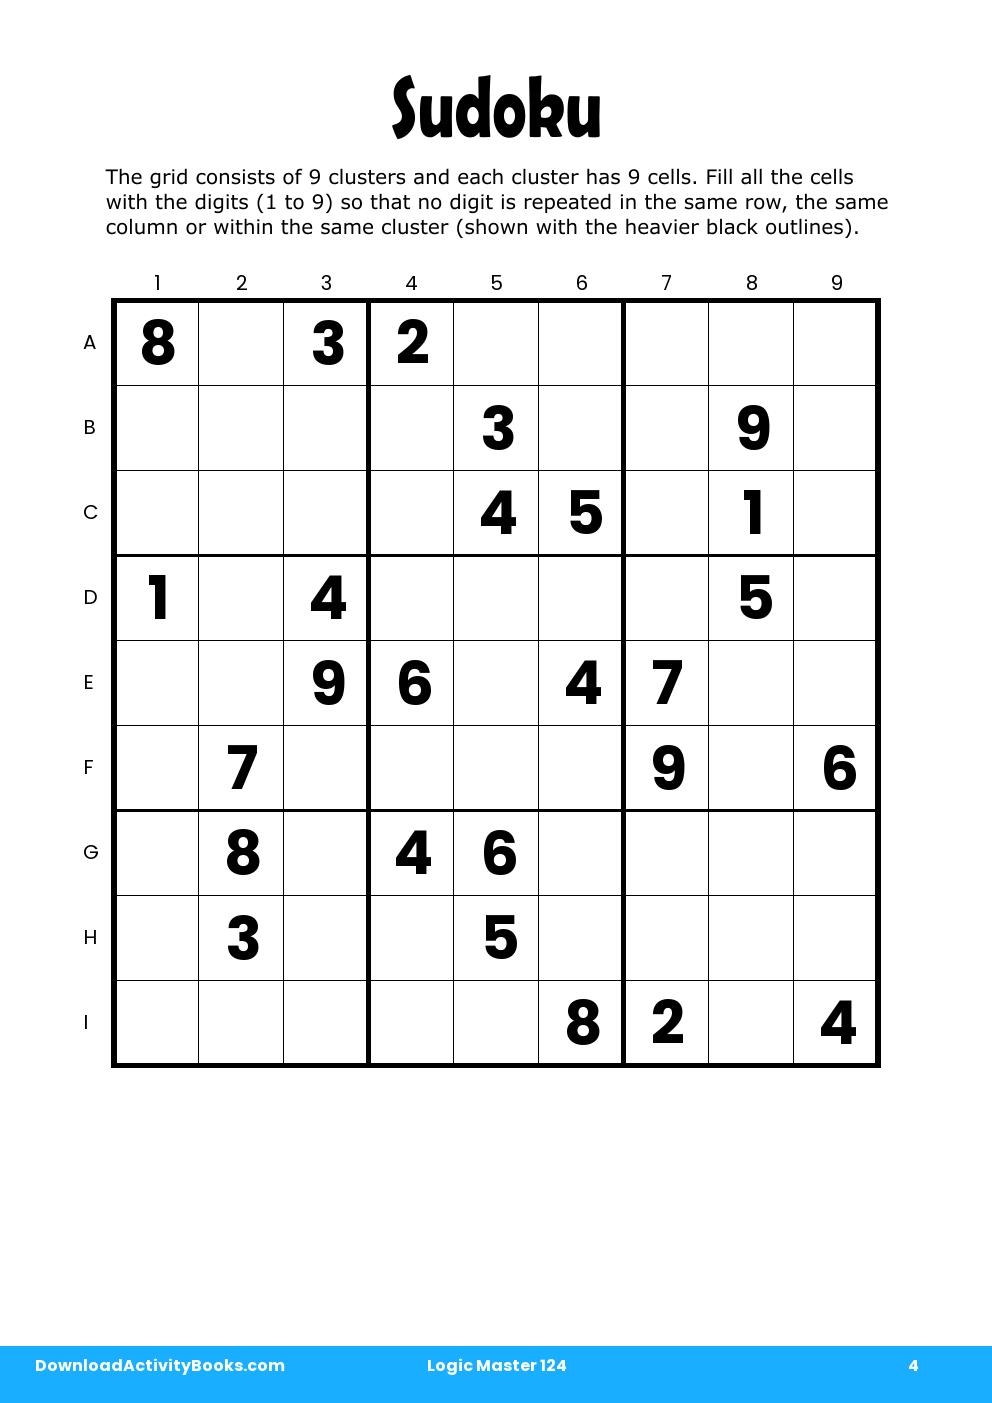 Sudoku in Logic Master 124